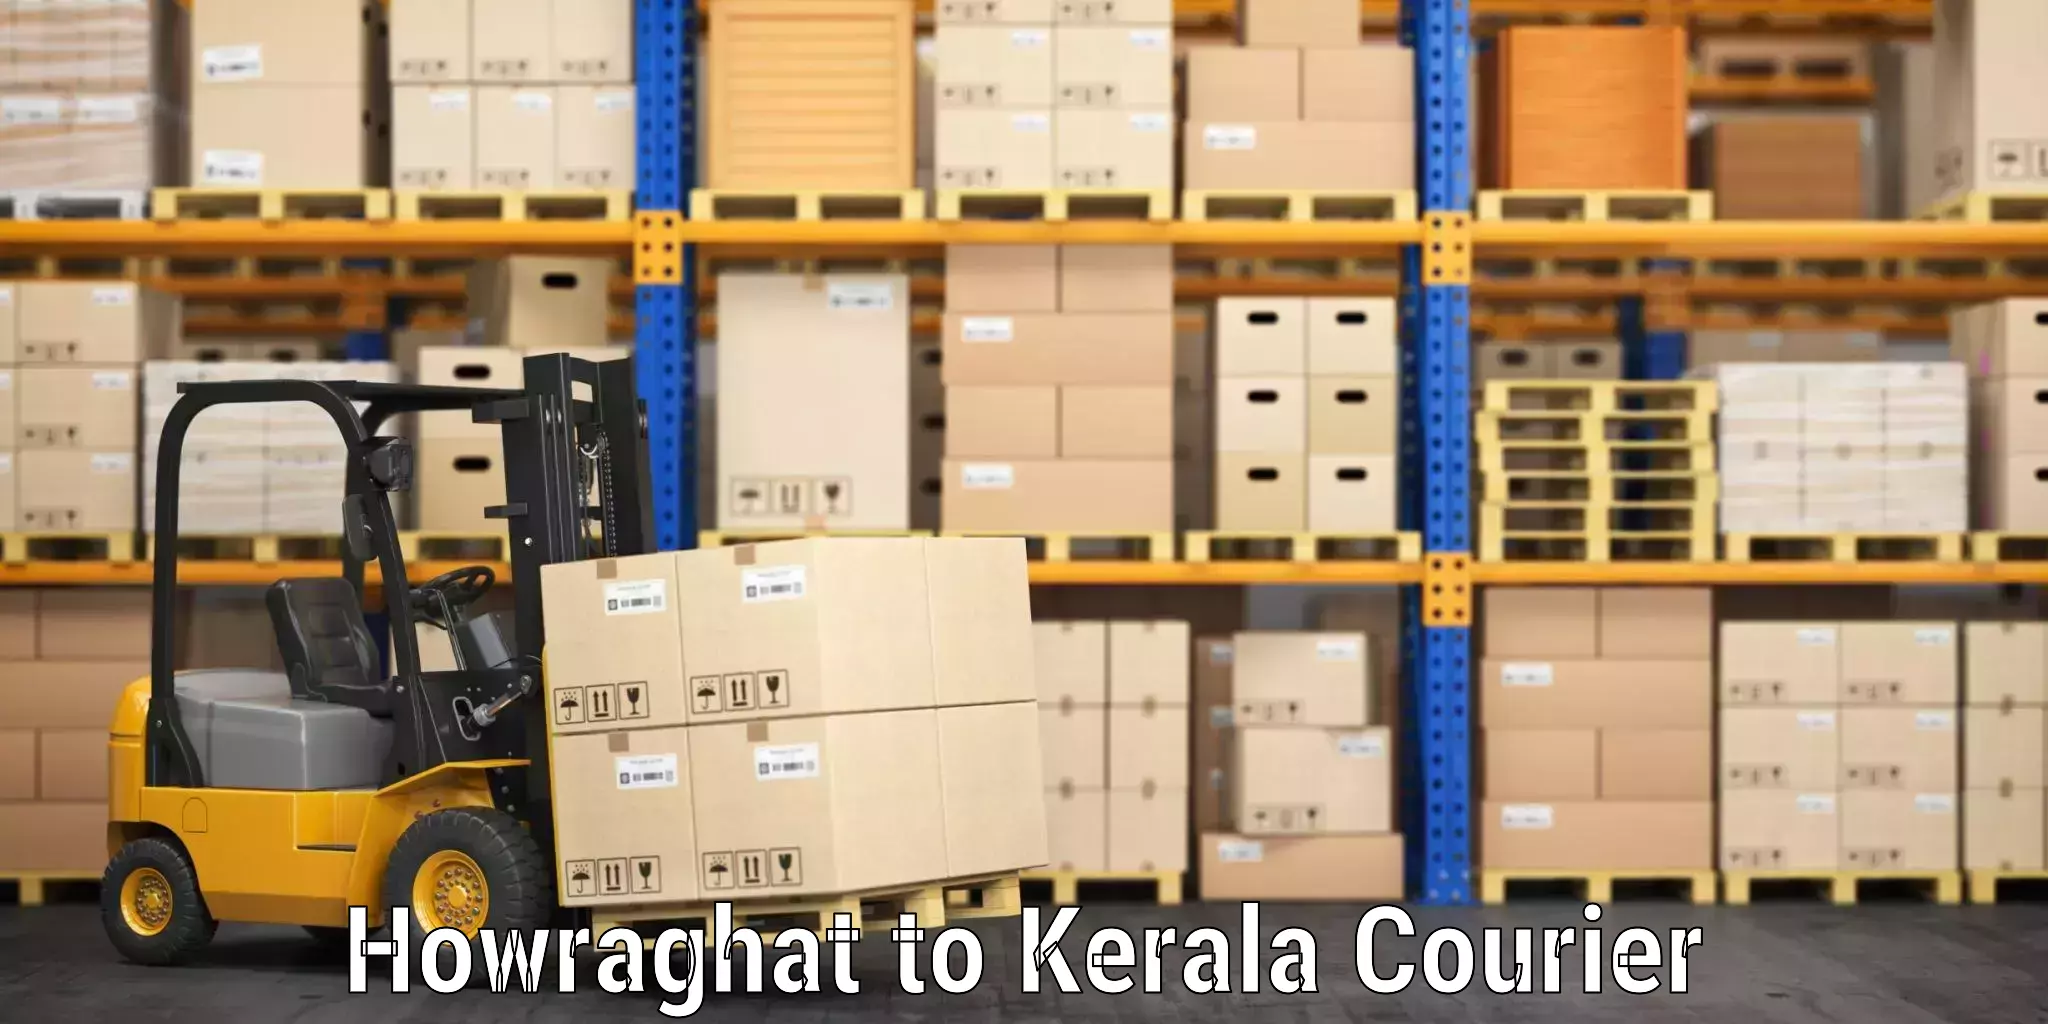 Online luggage shipping in Howraghat to Irinjalakuda